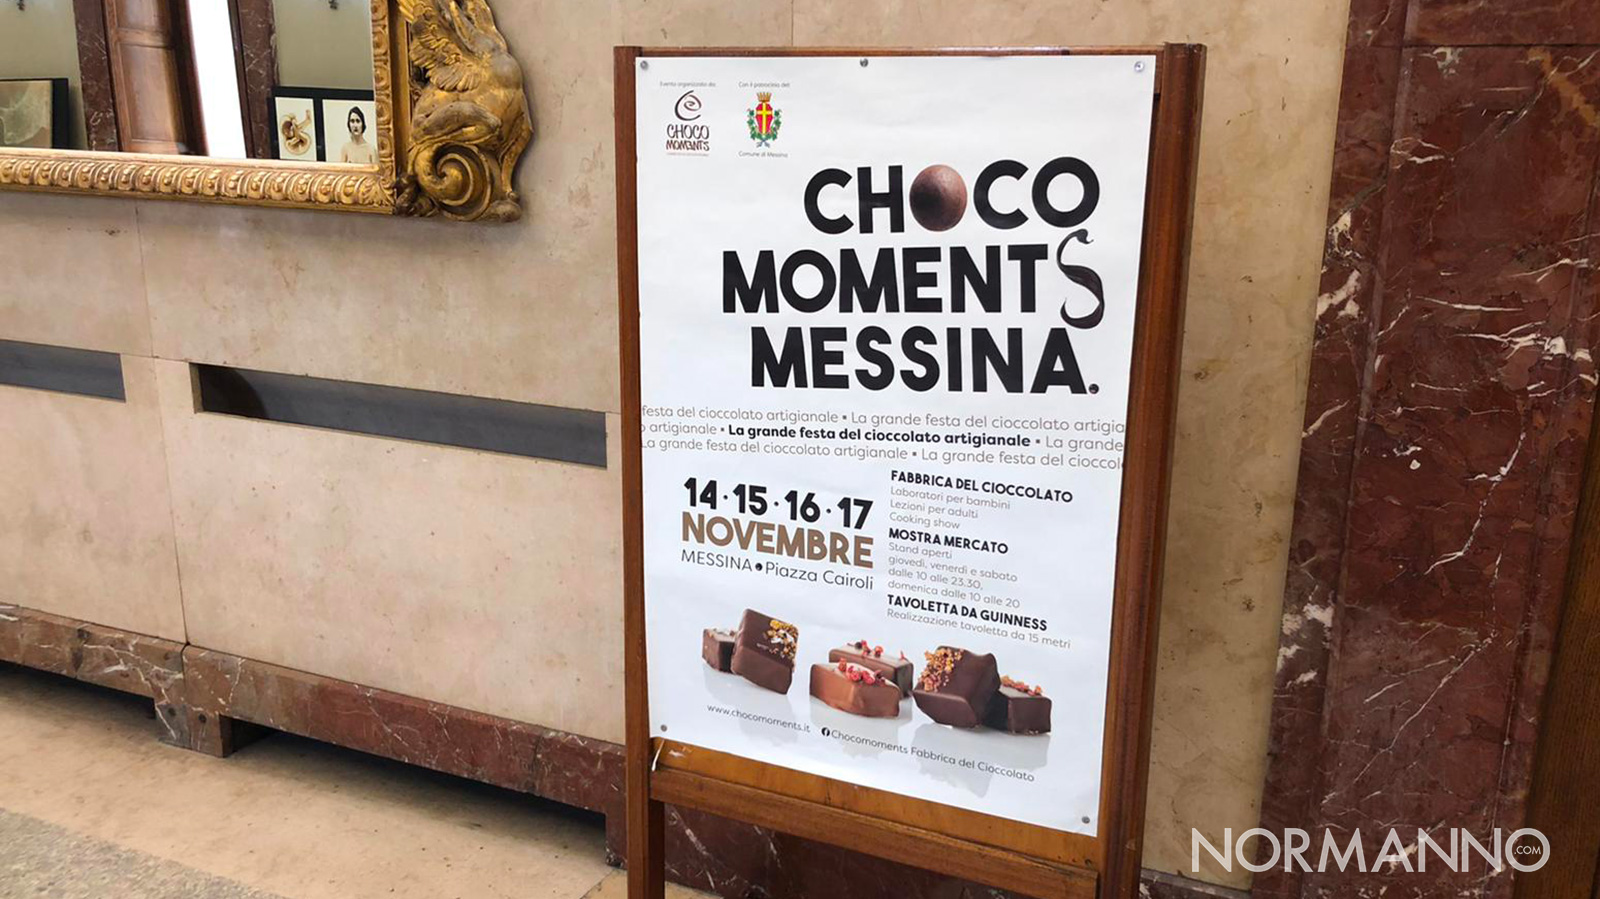 locandina della presentazione festa del cioccolato artigianale choco moments messina